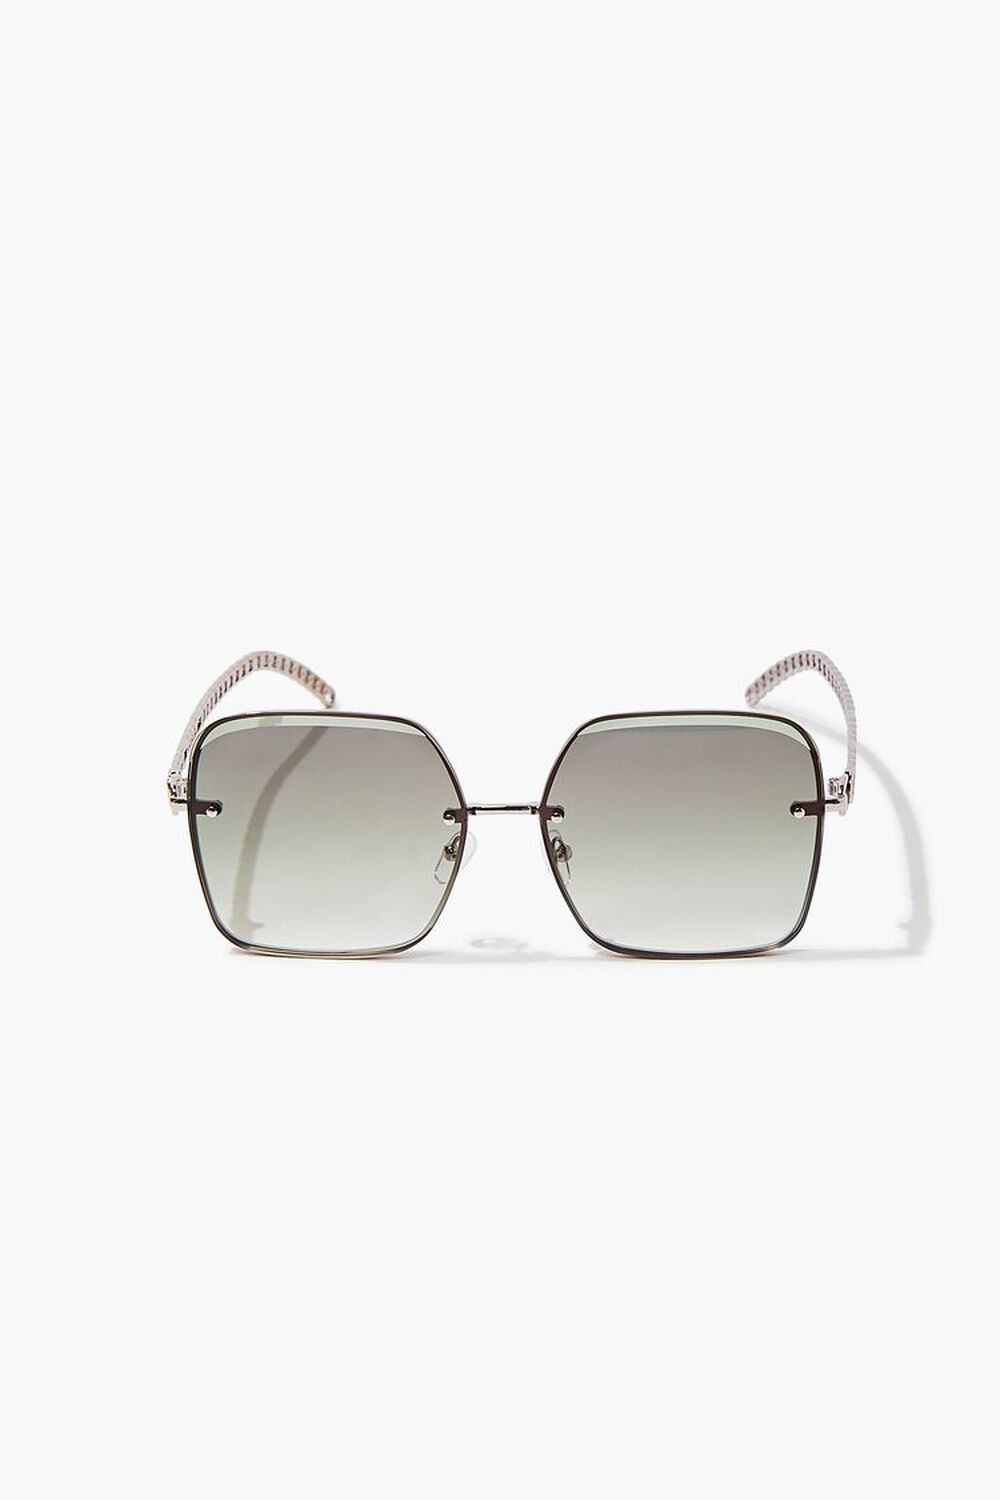 Chain Square Sunglasses, image 3